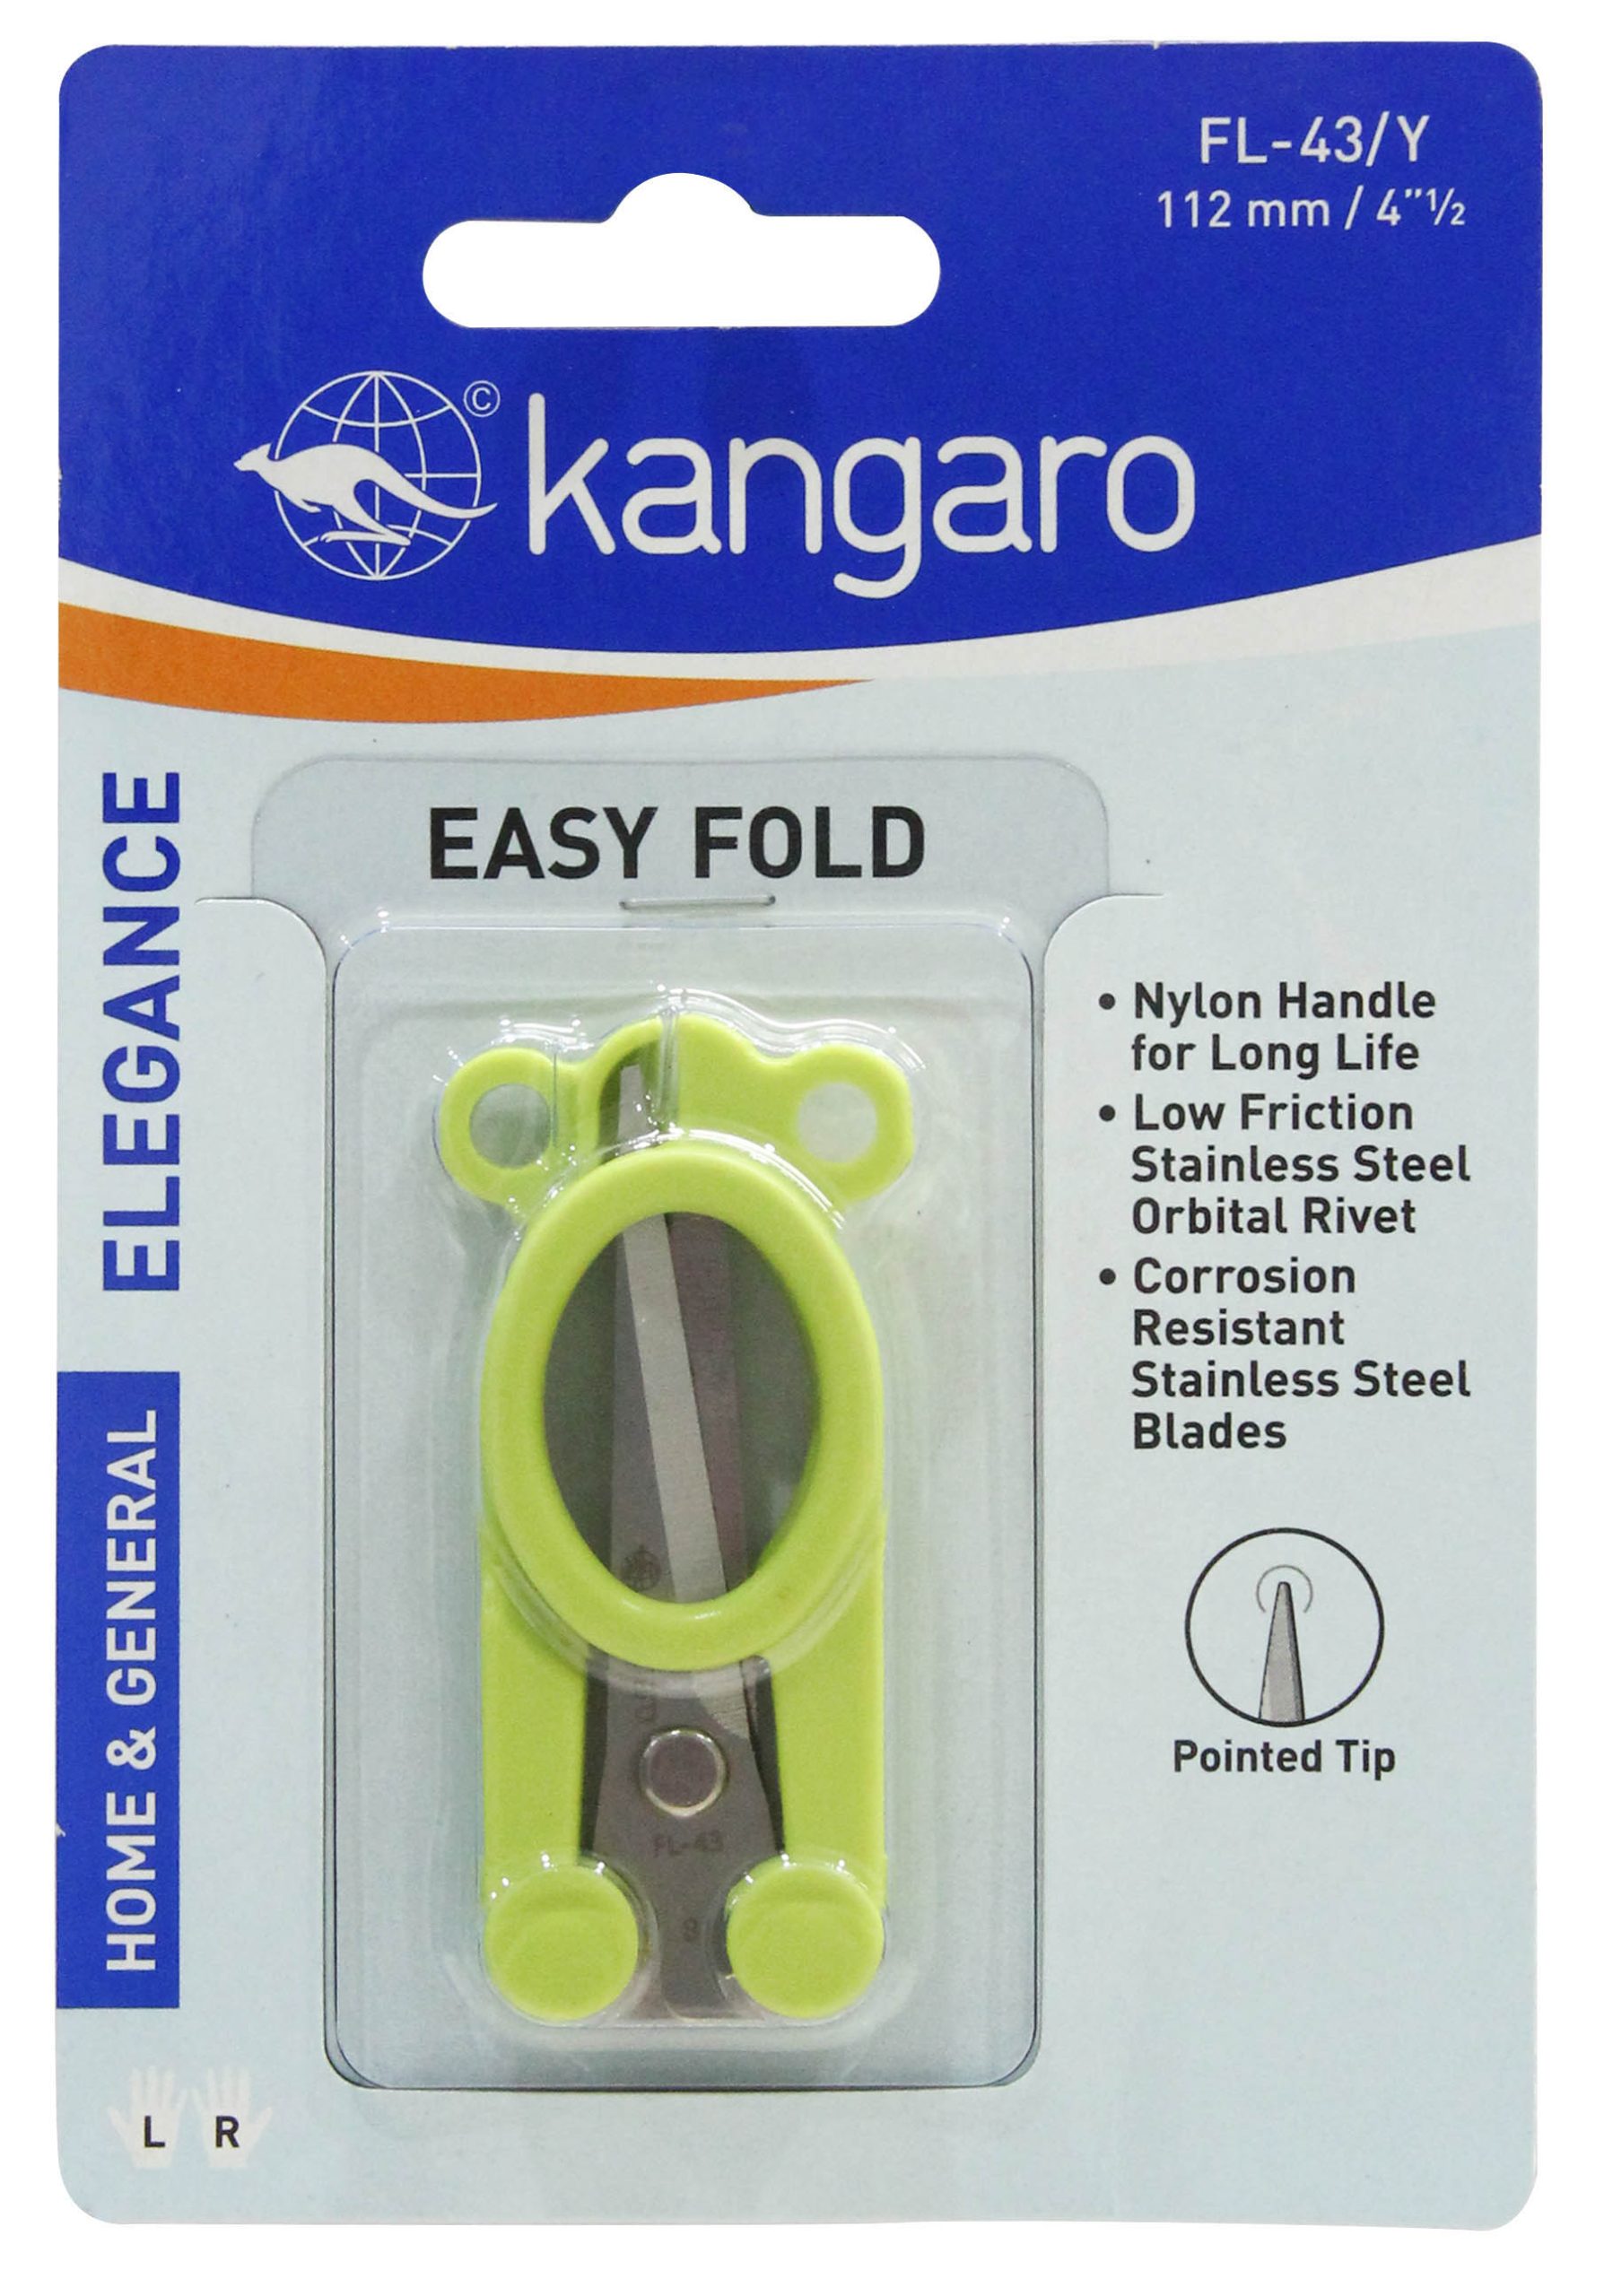 KANGARO EASY FOLD STEEL SCISSORS FL-43